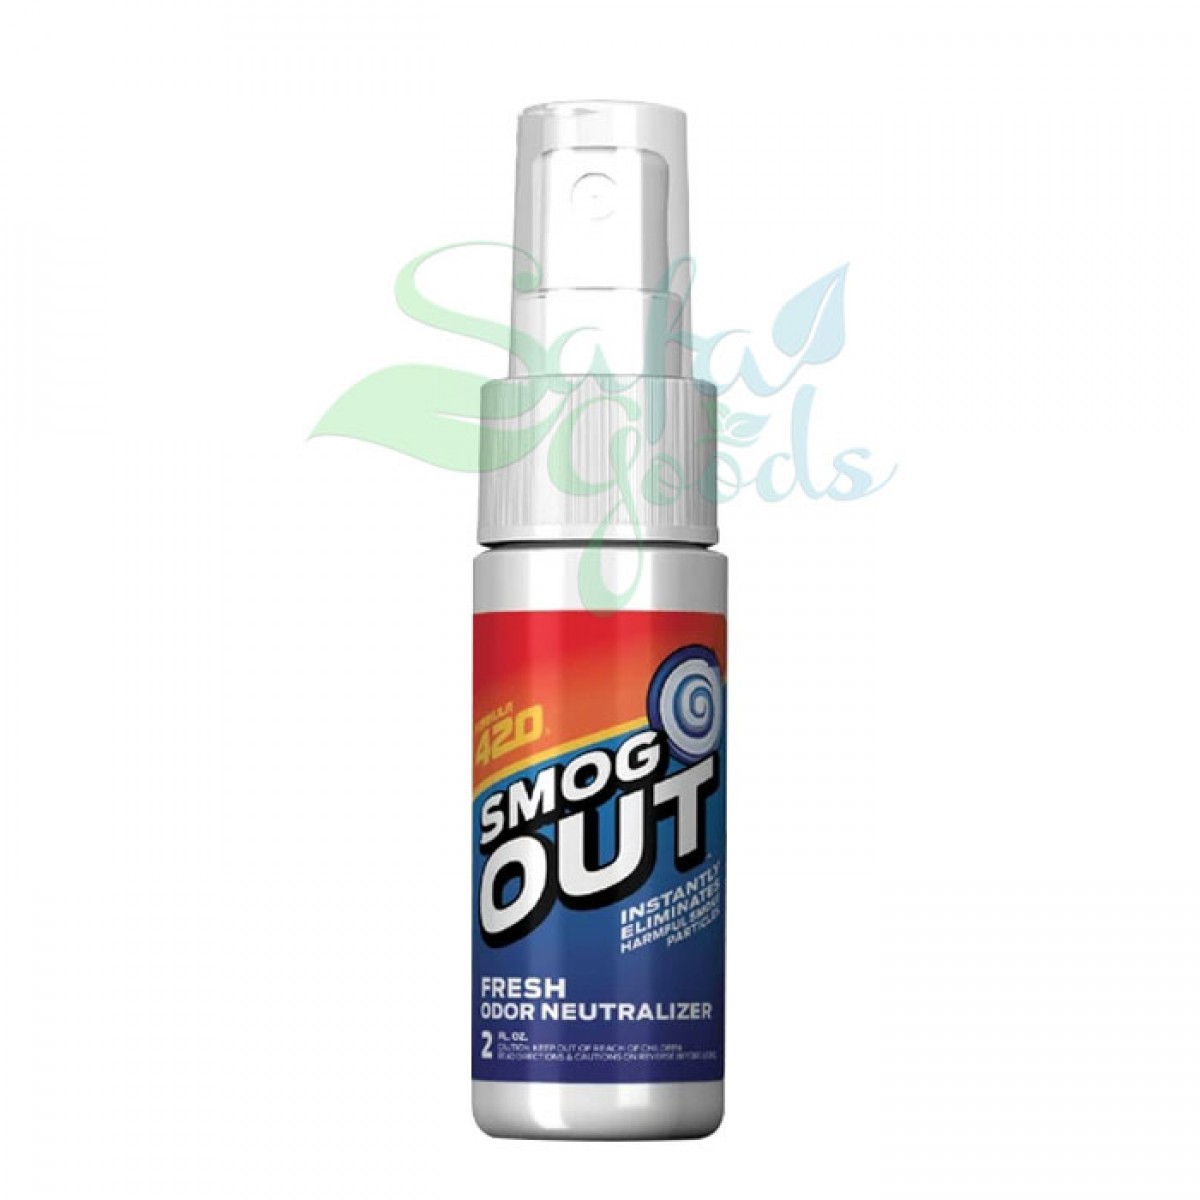 Formula 420 Smog Out Odor Neutralizer